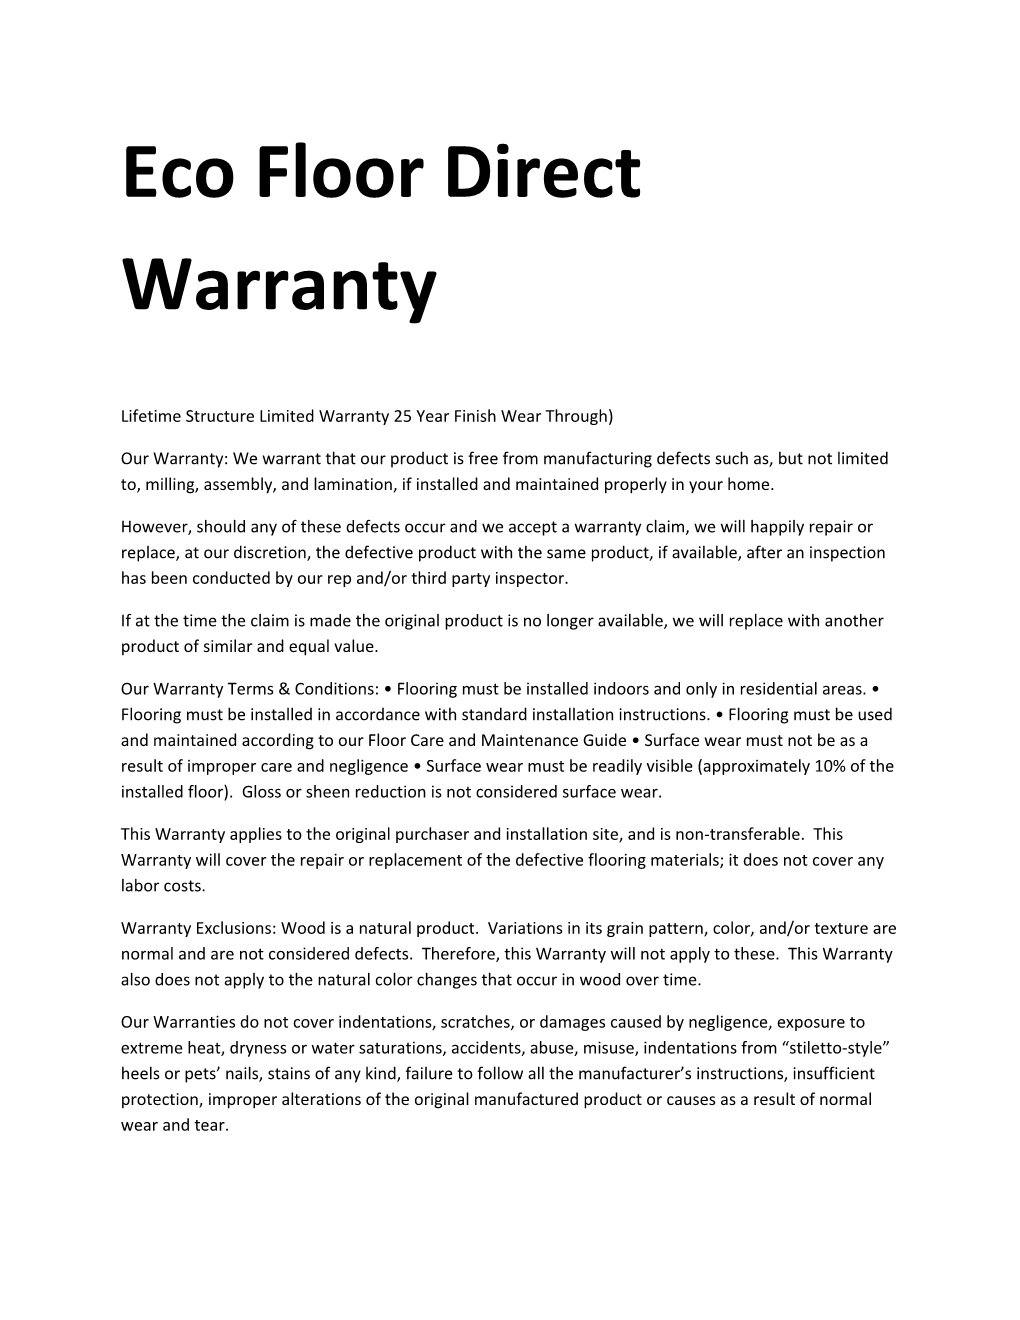 Eco Floor Direct Warranty